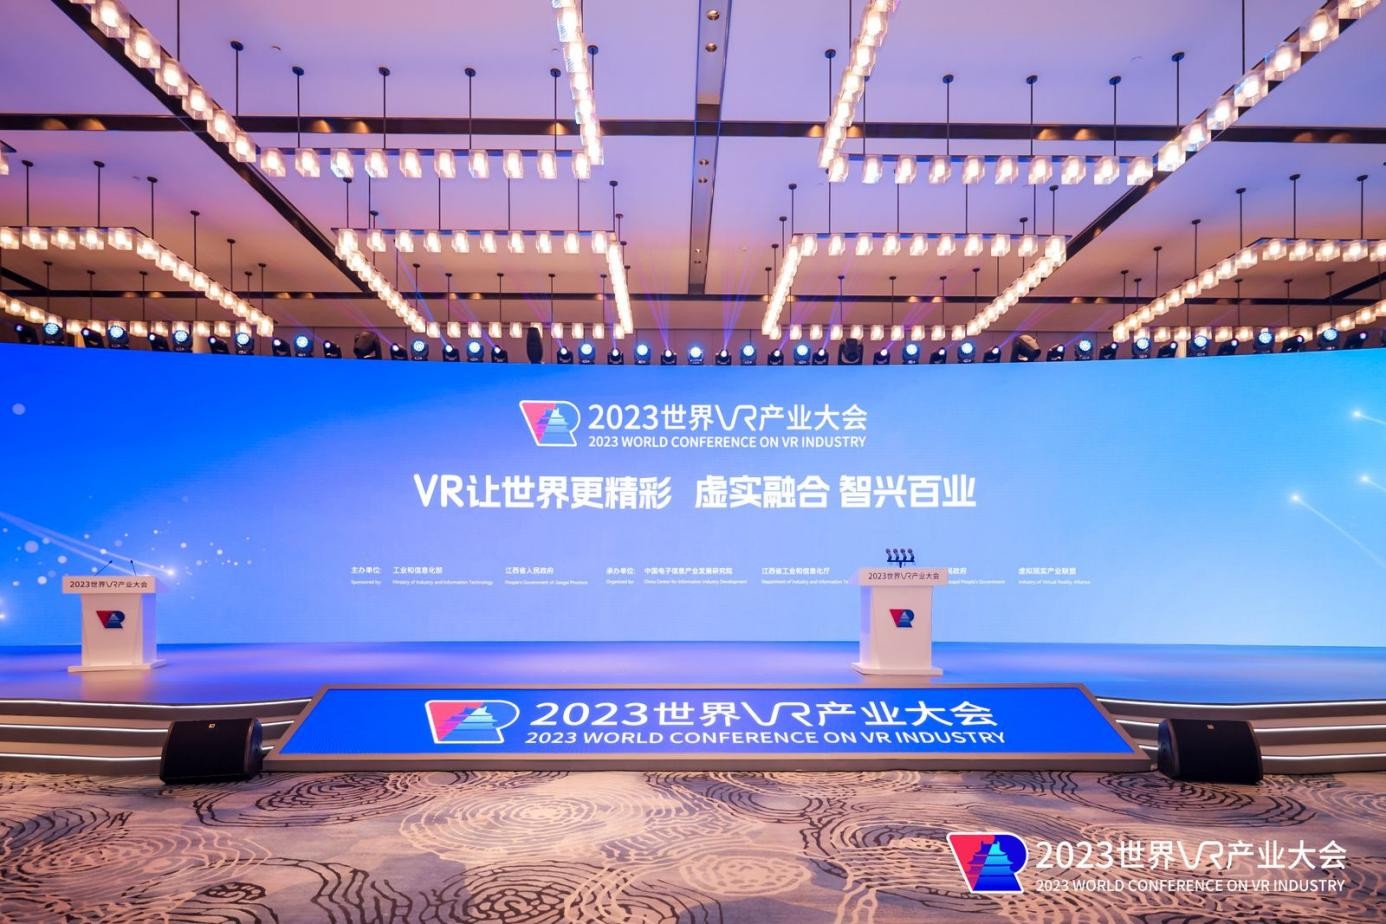 格如灵科技连续4年获评“中国VR50强企业”